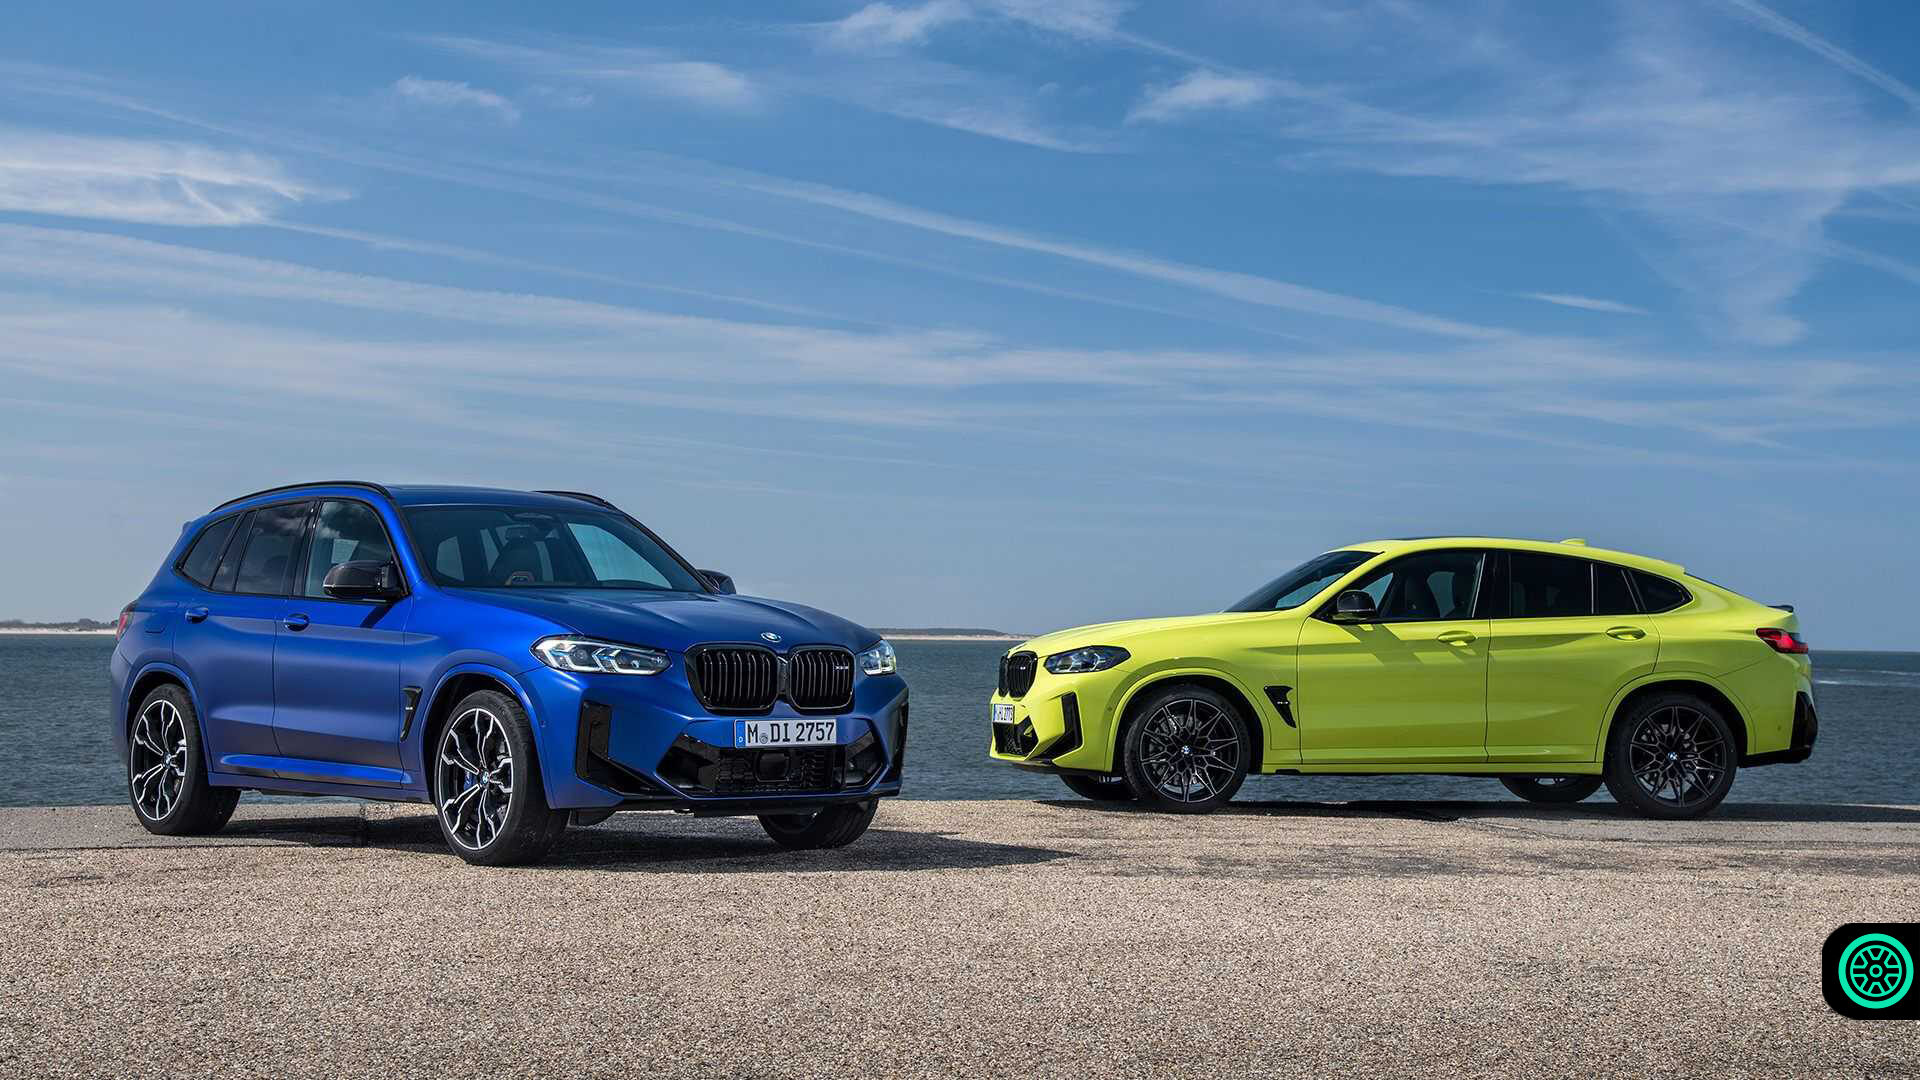 2021 BMW X3 M ve X4 M modelleri resmi olarak tanıtıldı 1